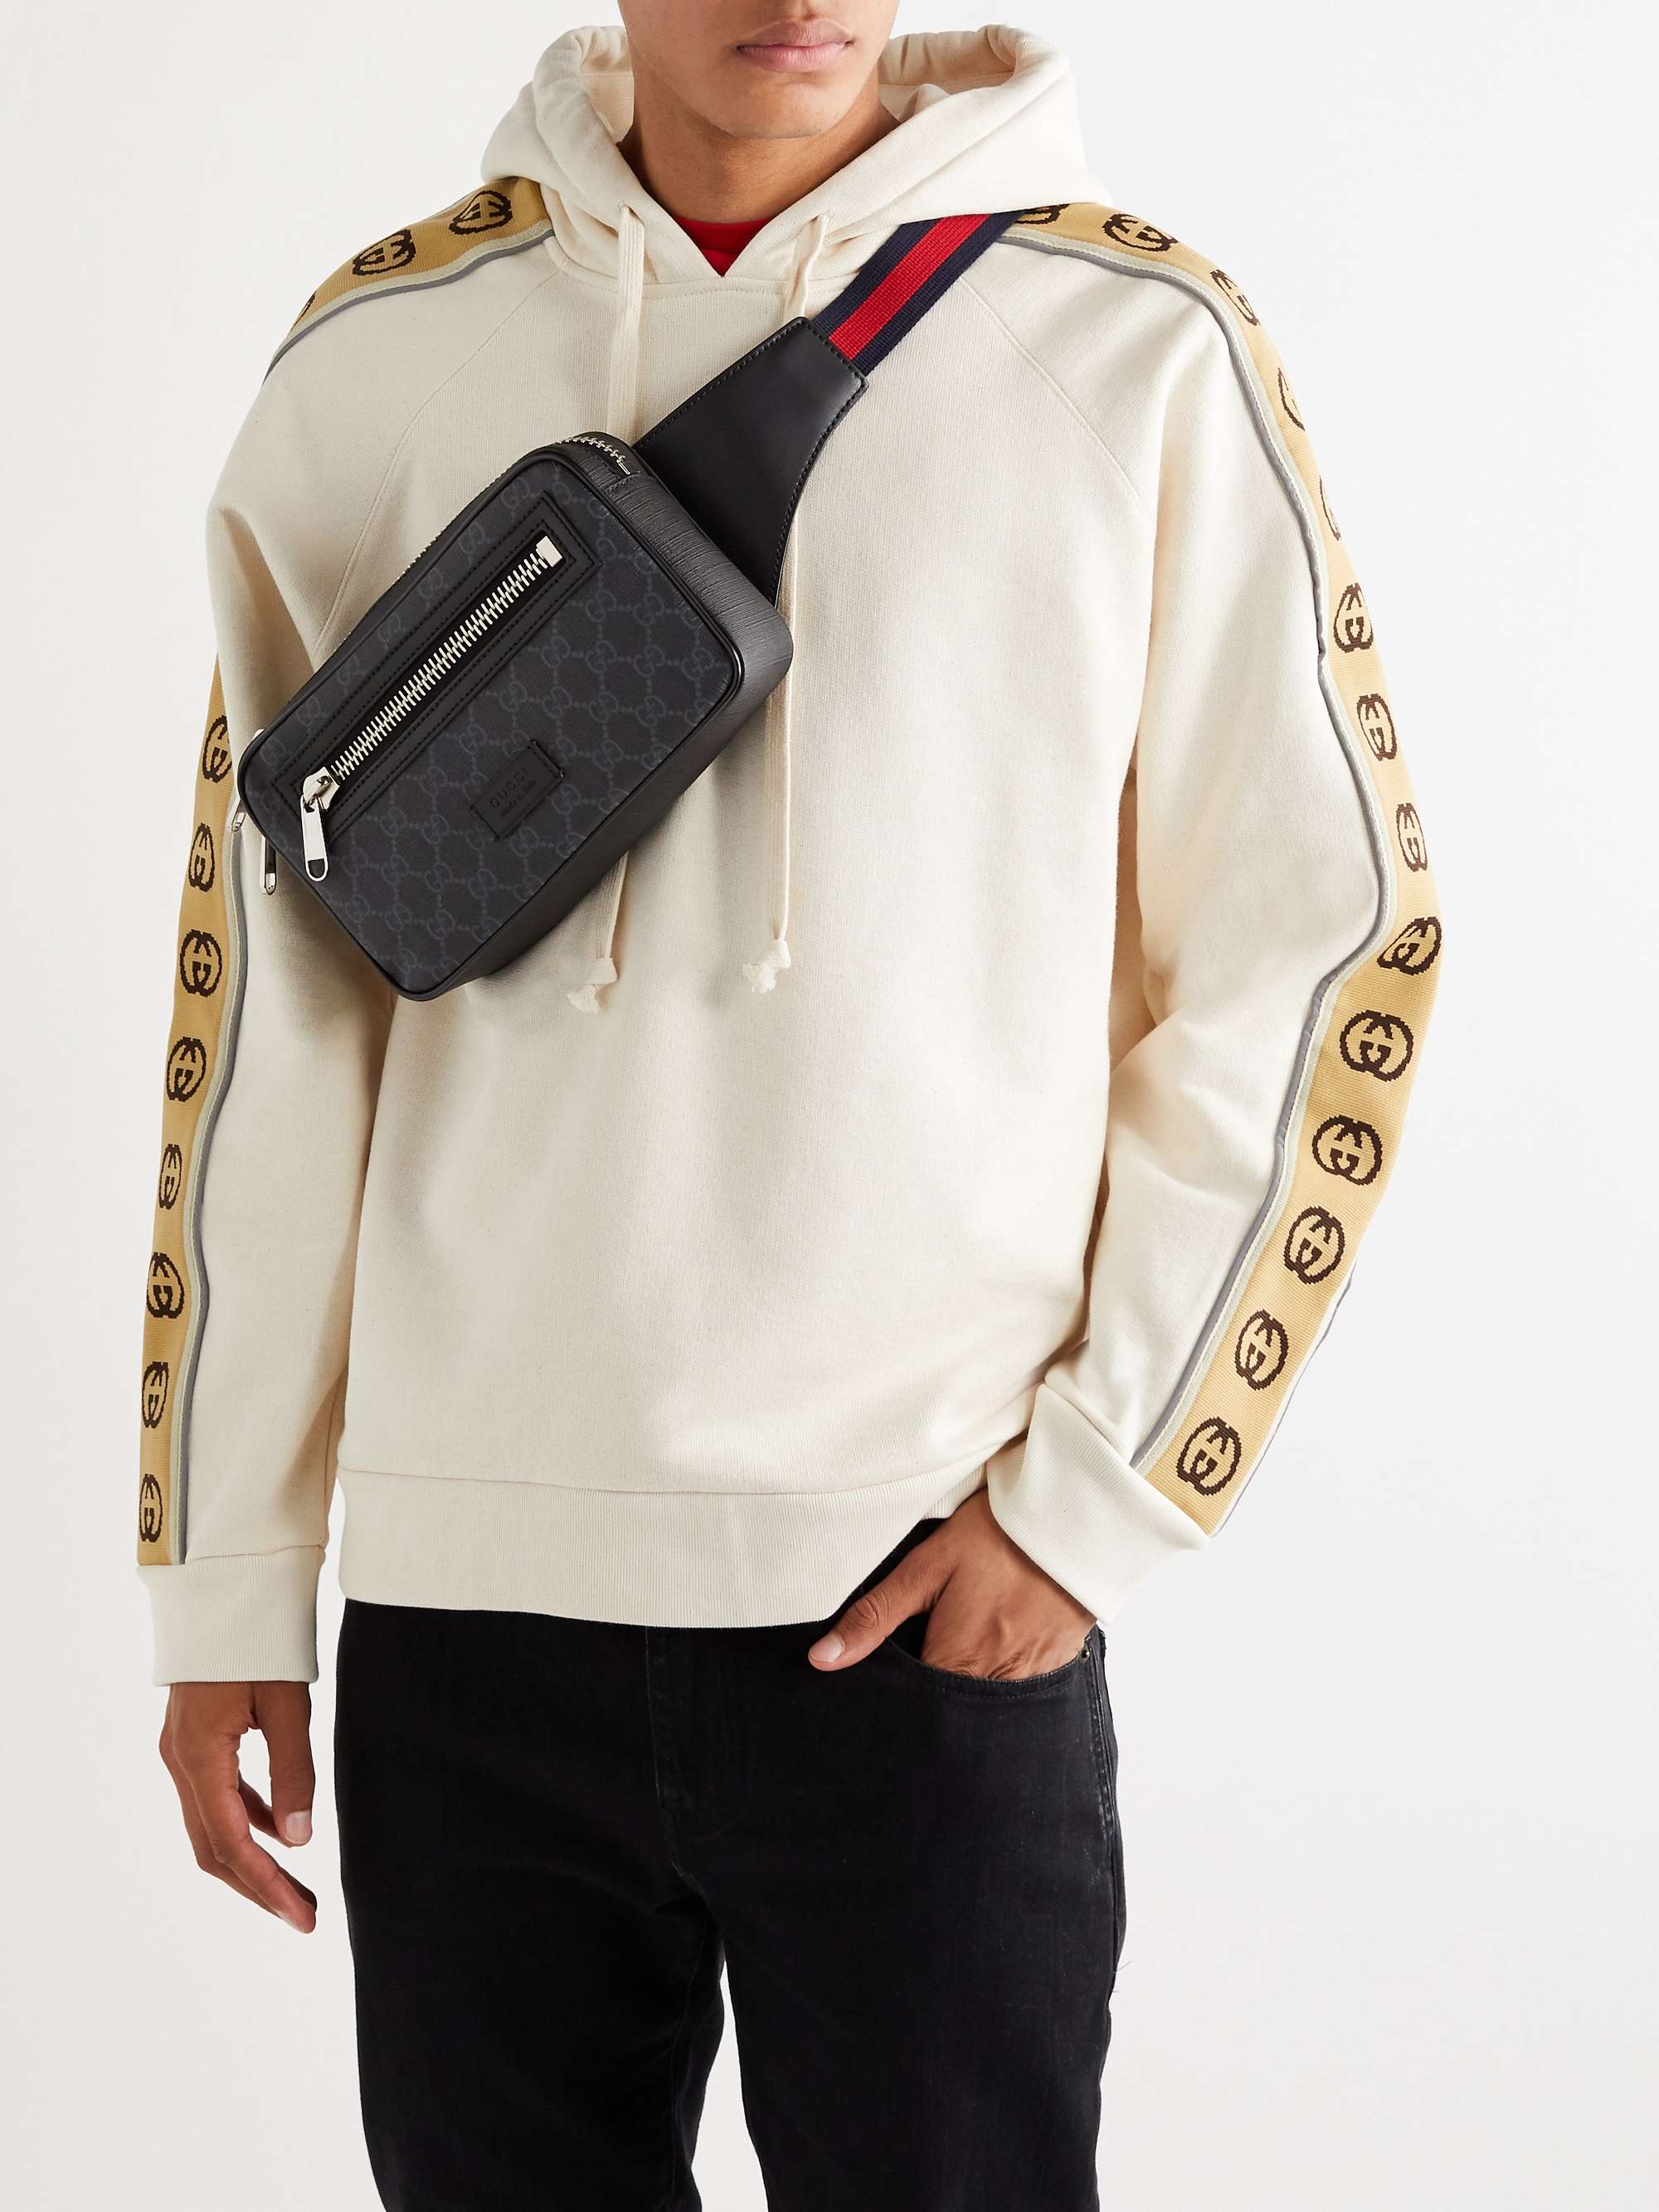 GUCCI Leather-Trimmed Monogrammed Coated-Canvas Belt Bag for Men | MR PORTER